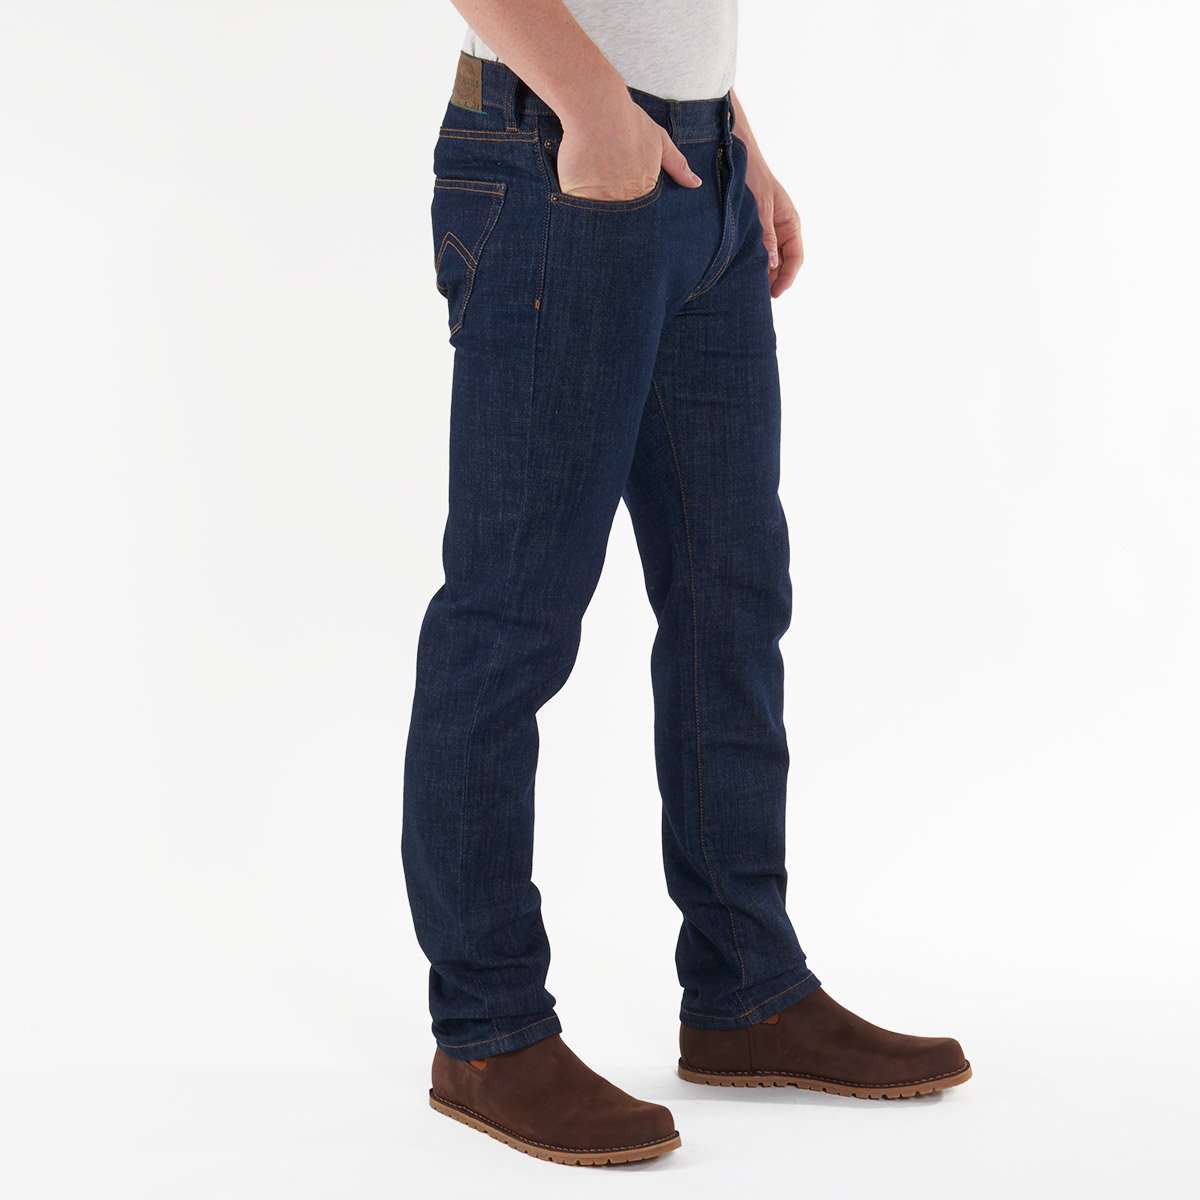 Eine männliche Person trägt eine Jeans im Regular Fit von Fairjeans, einem Hersteller von nachhaltigen Jeans aus Bio-Baumwolle.